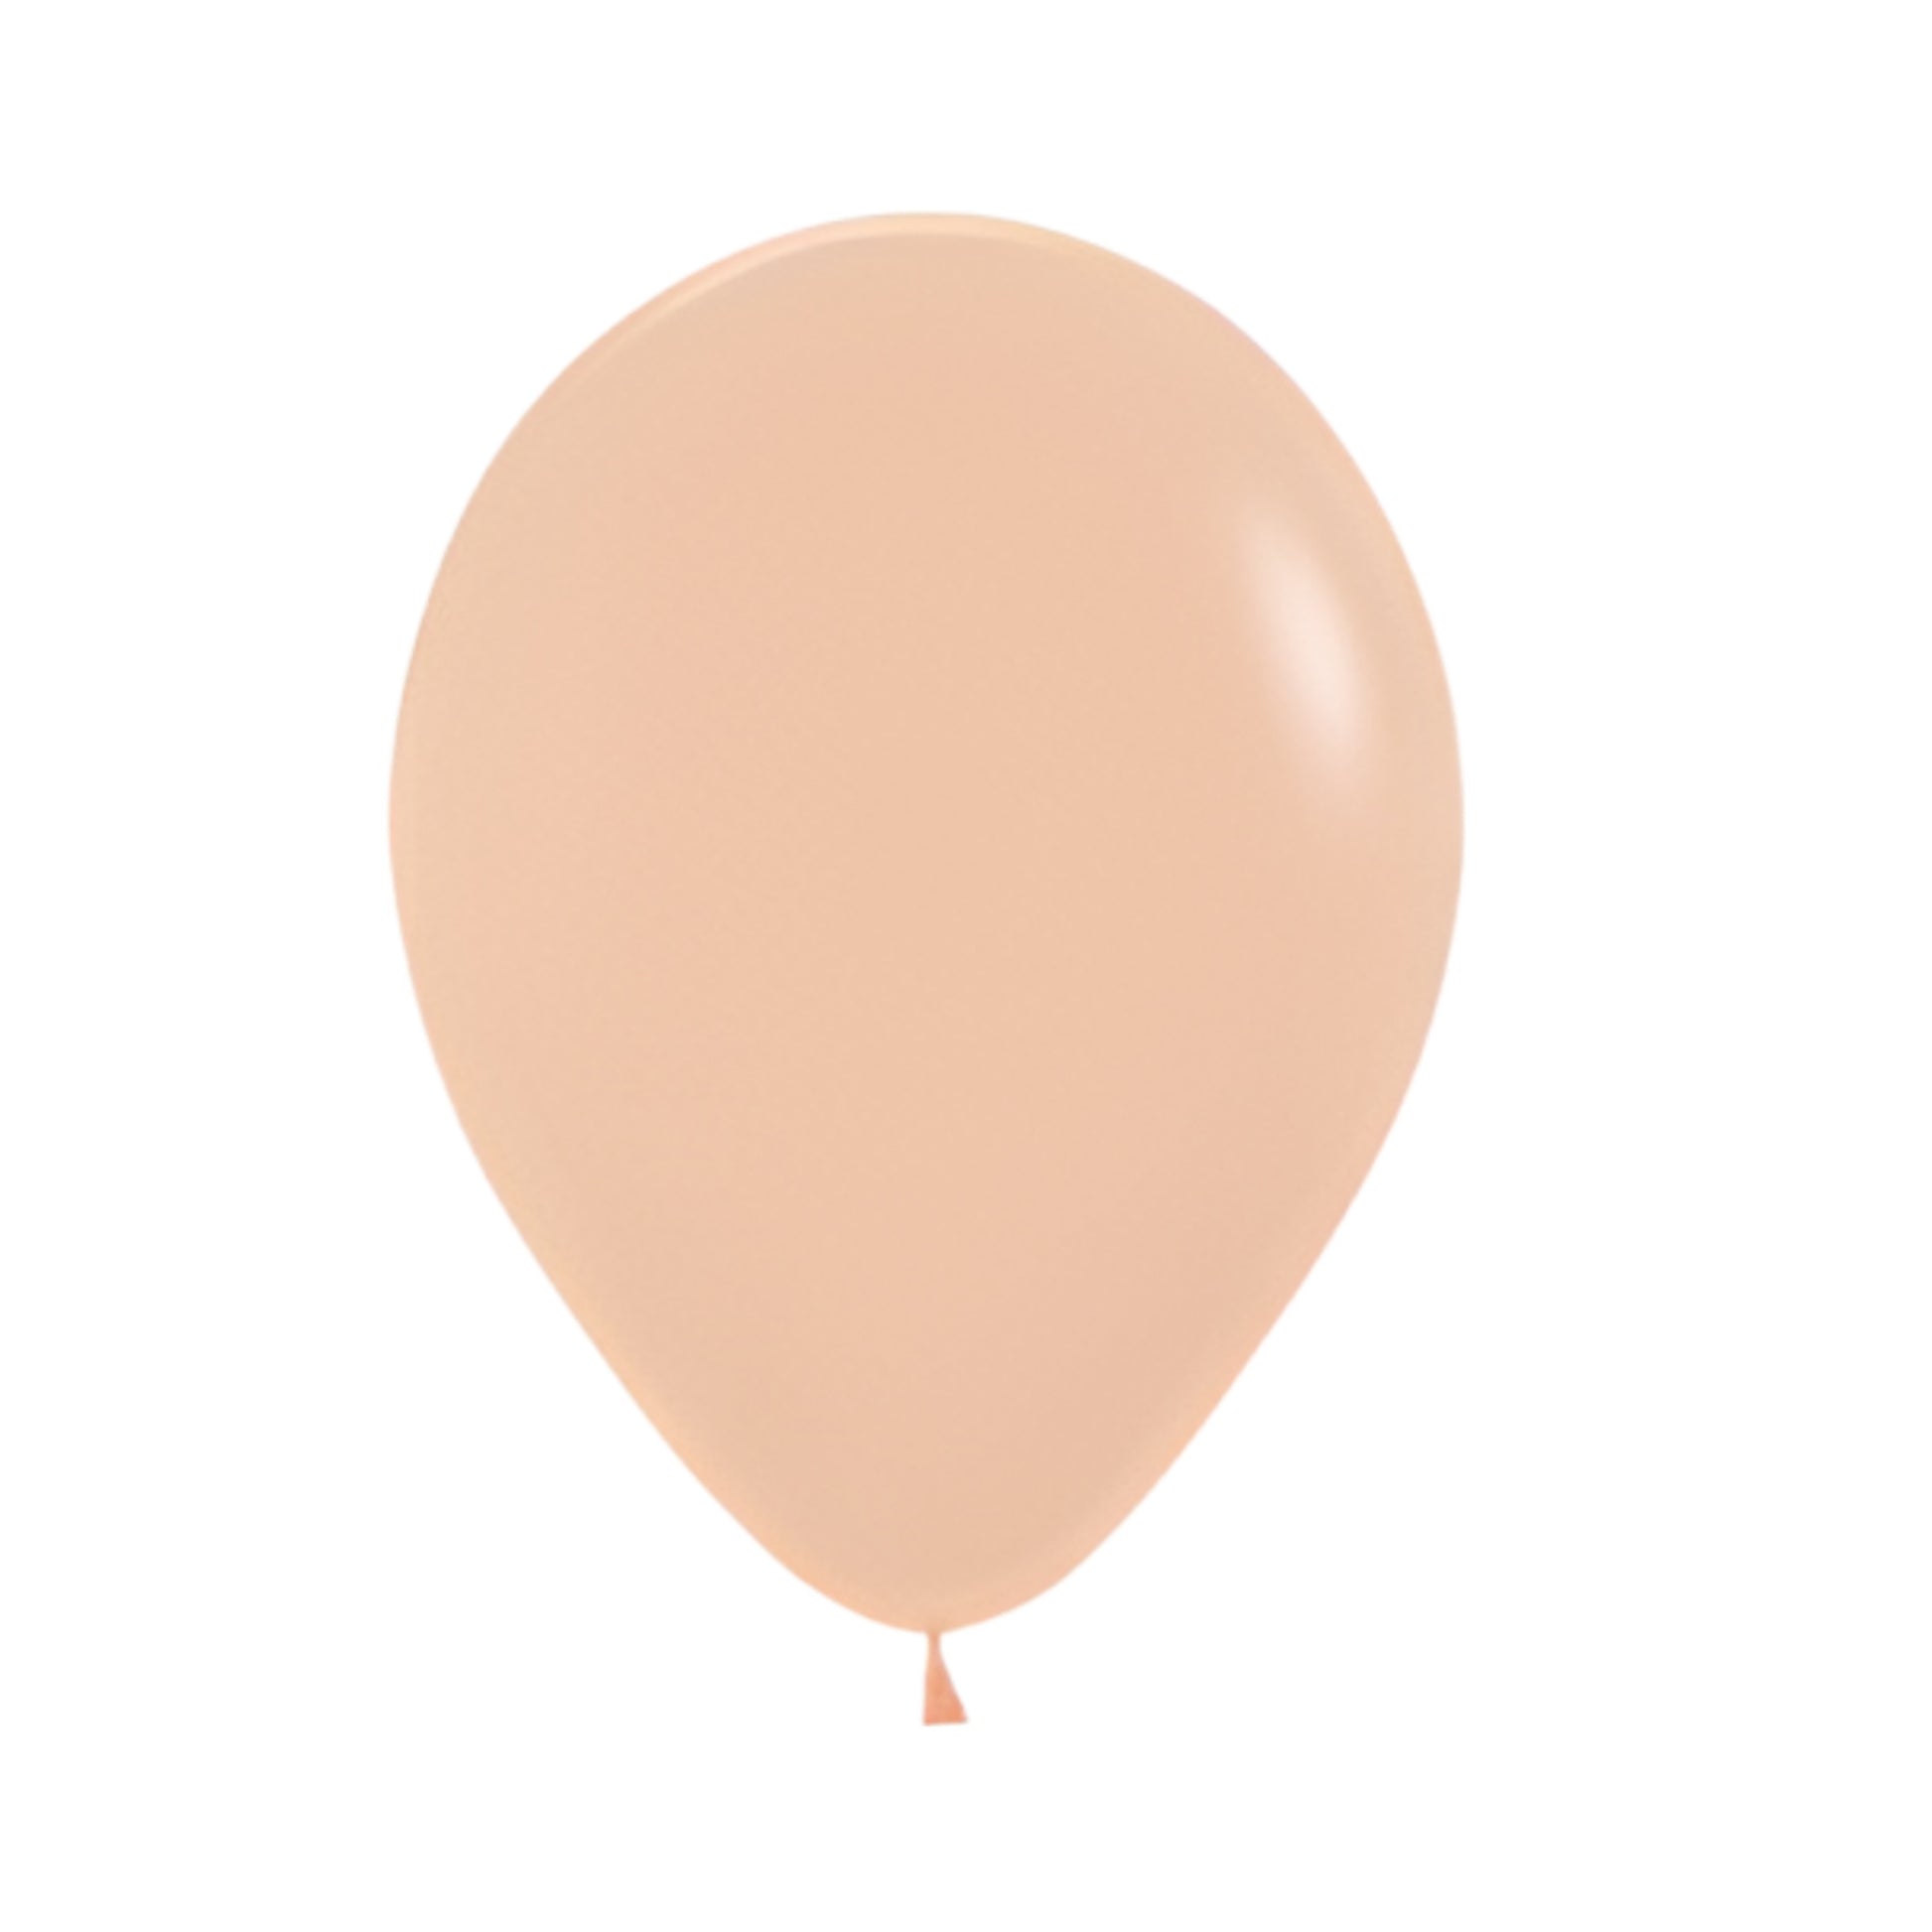 30cm standard size peach coloured balloon. 